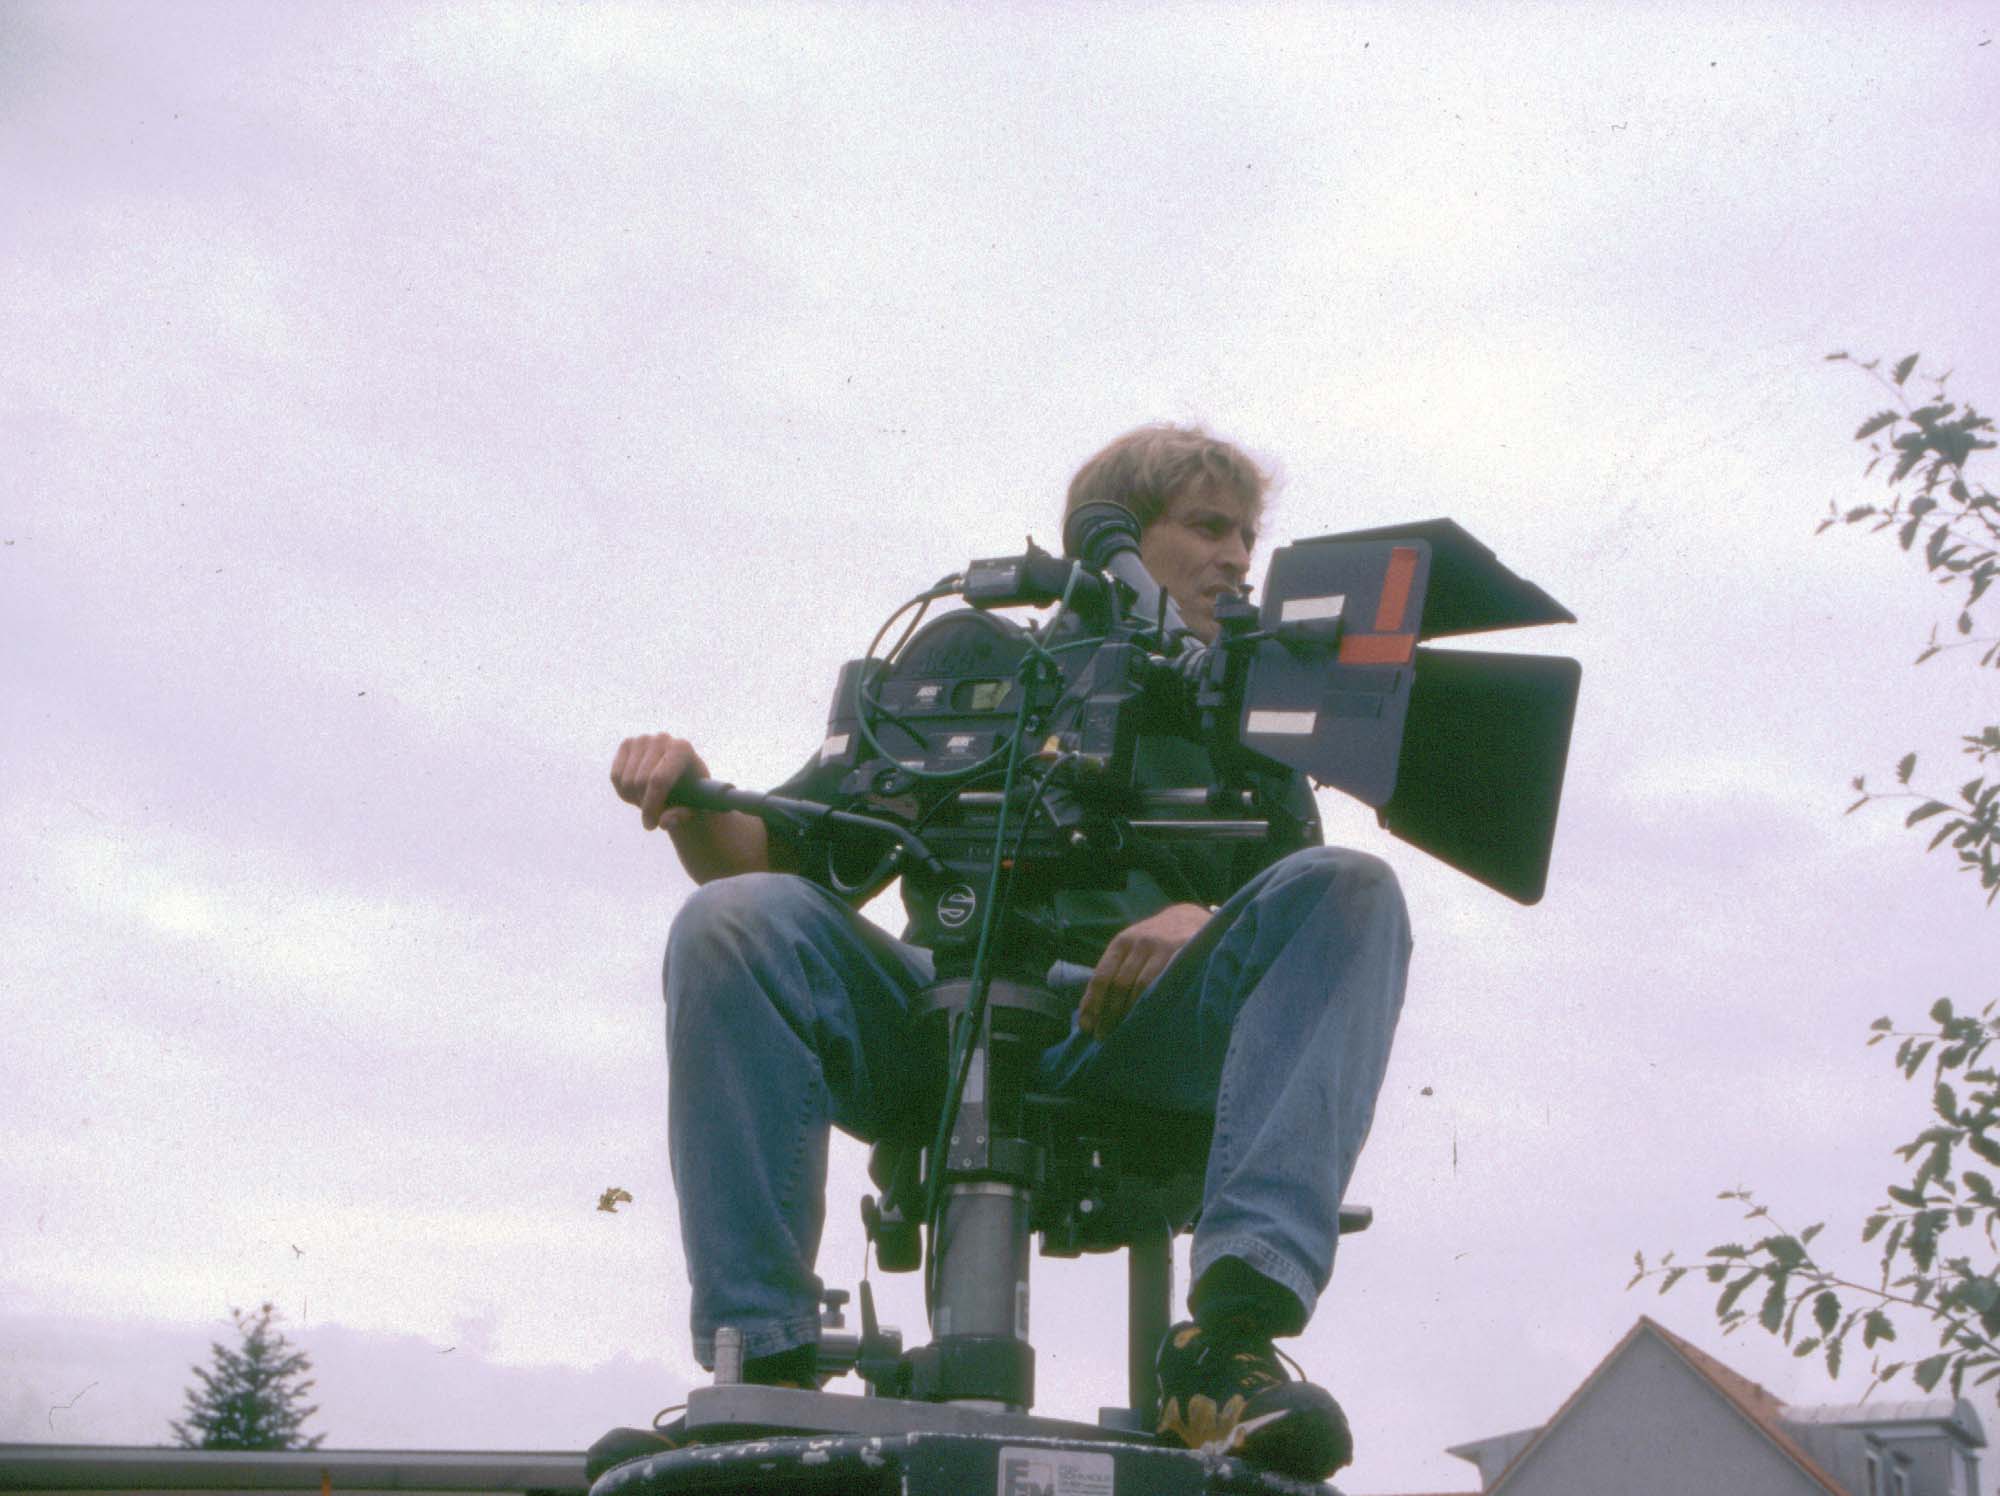 Kamerakran2 2000